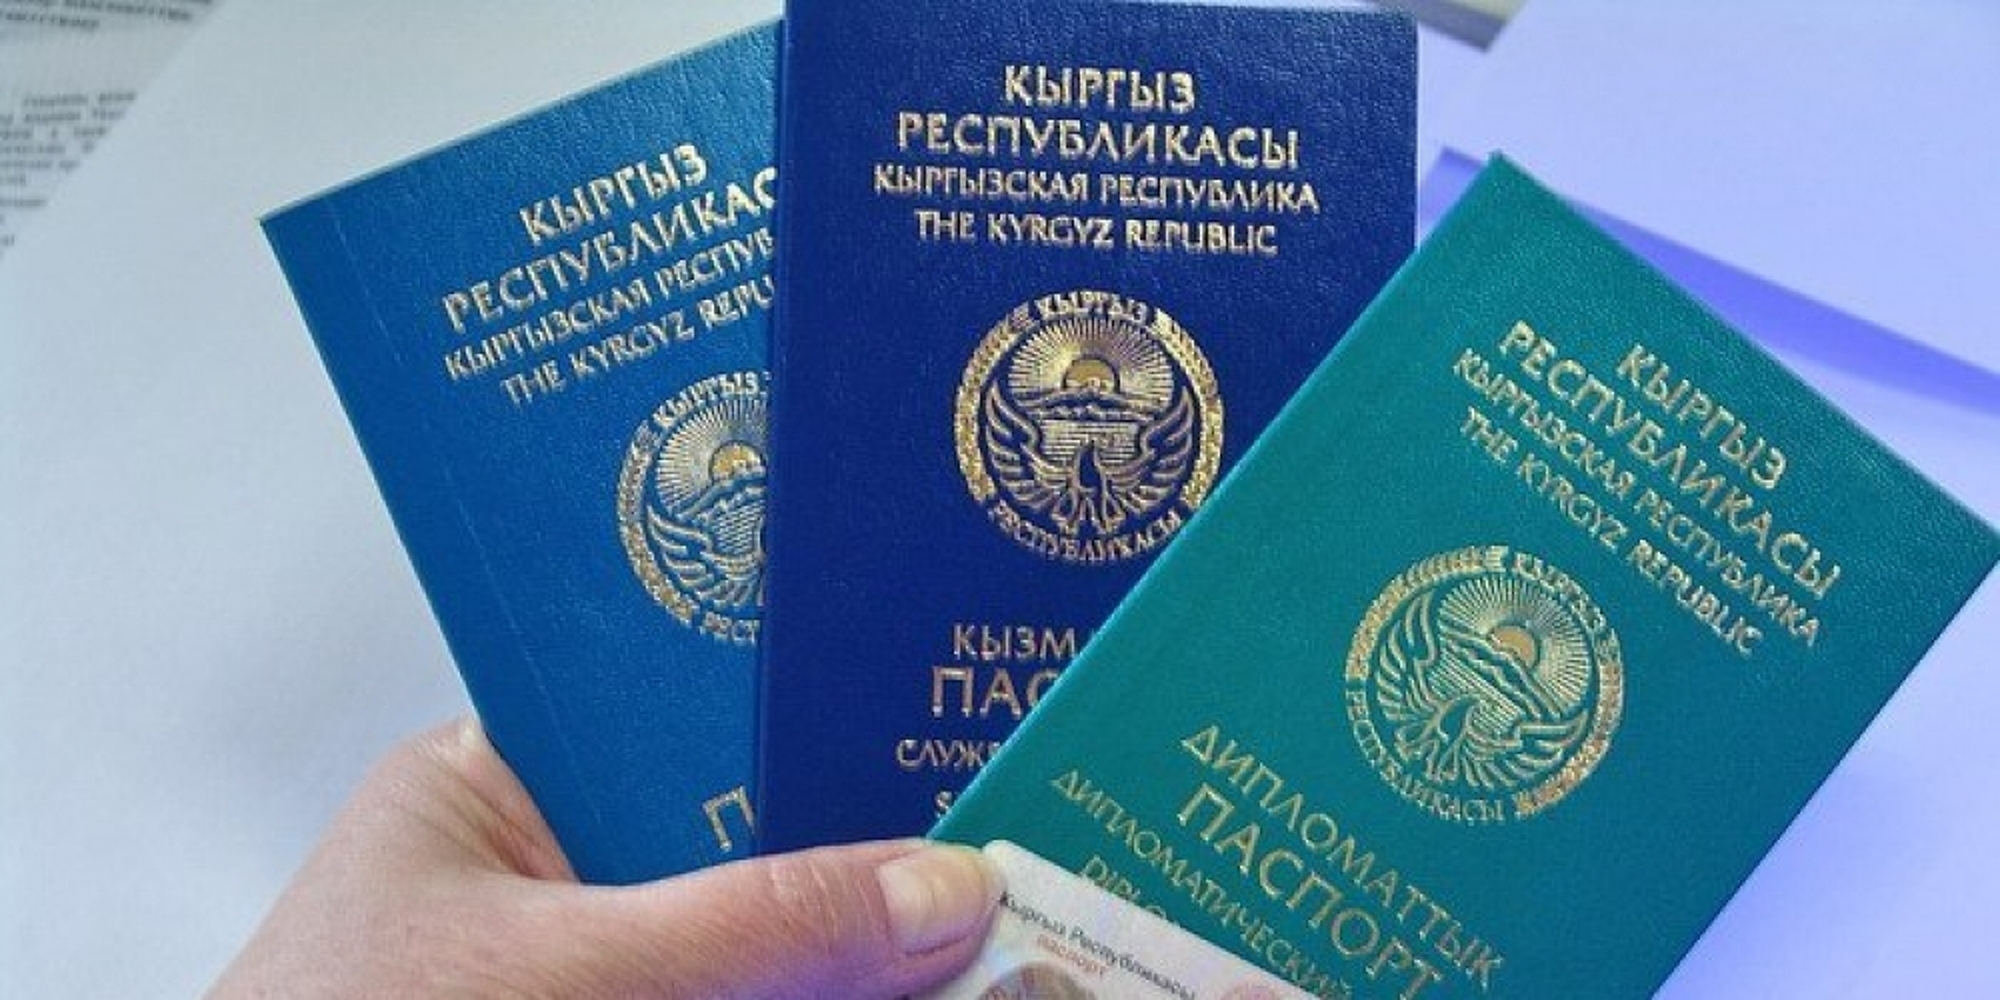 удостоверение лица без гражданства в казахстане